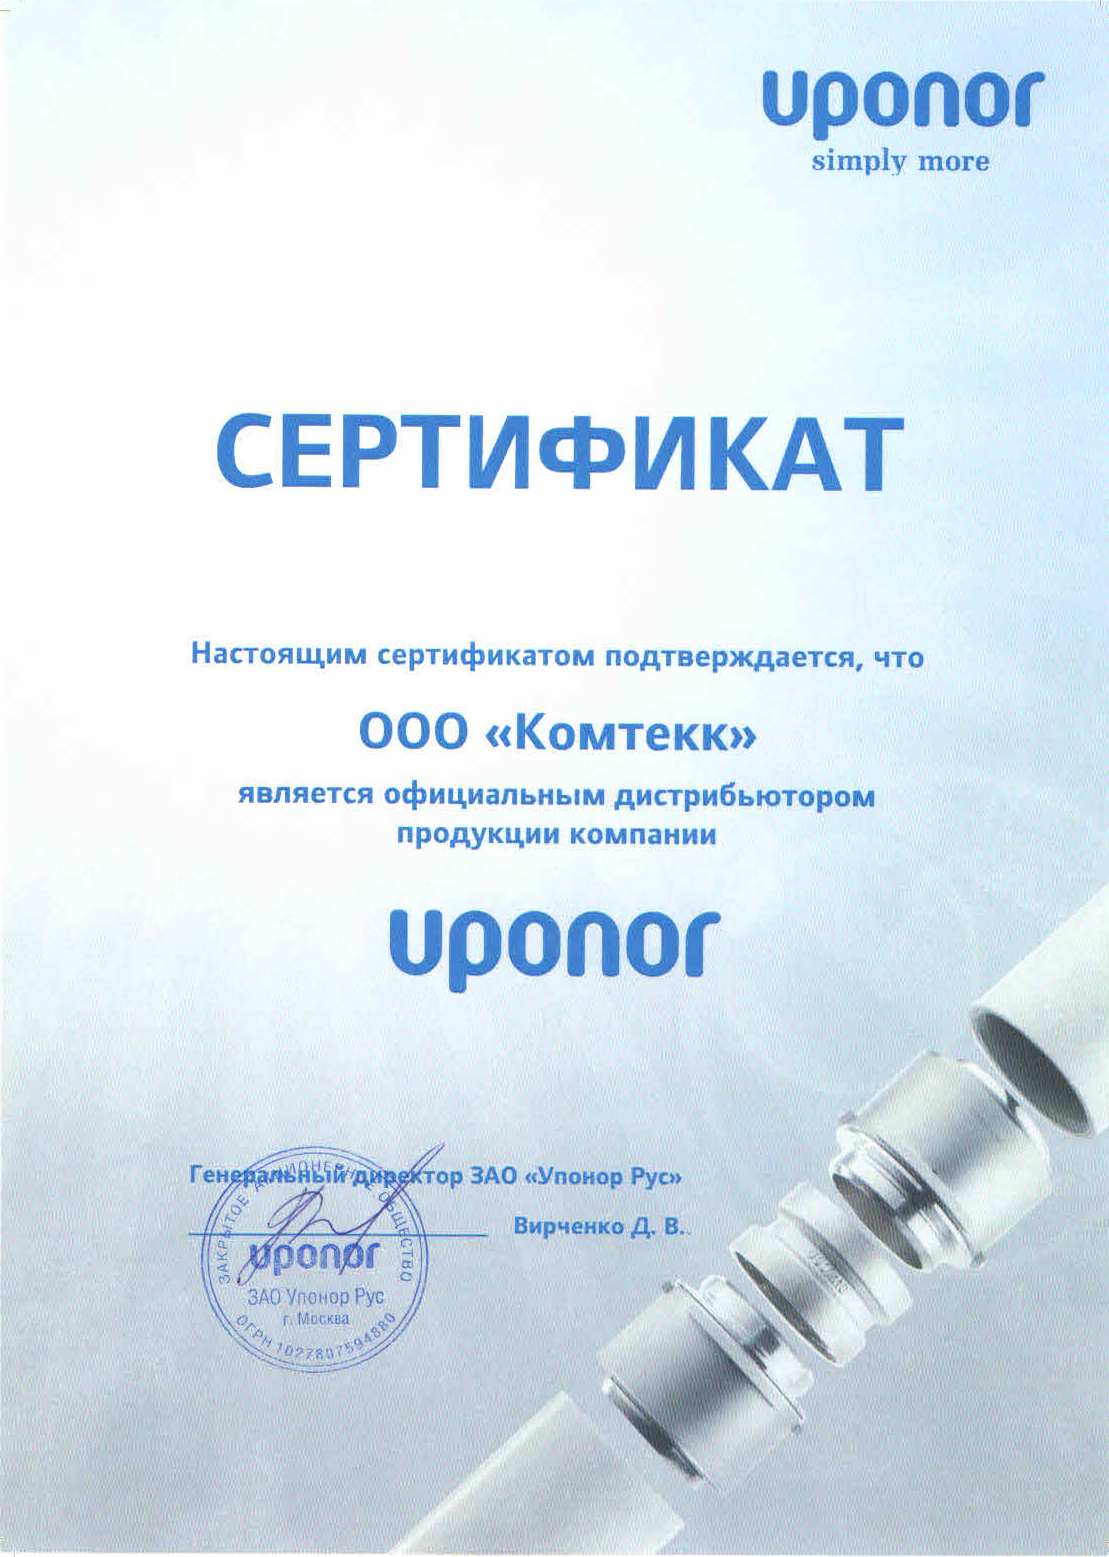 Сертификат дистрибьютора Uponor